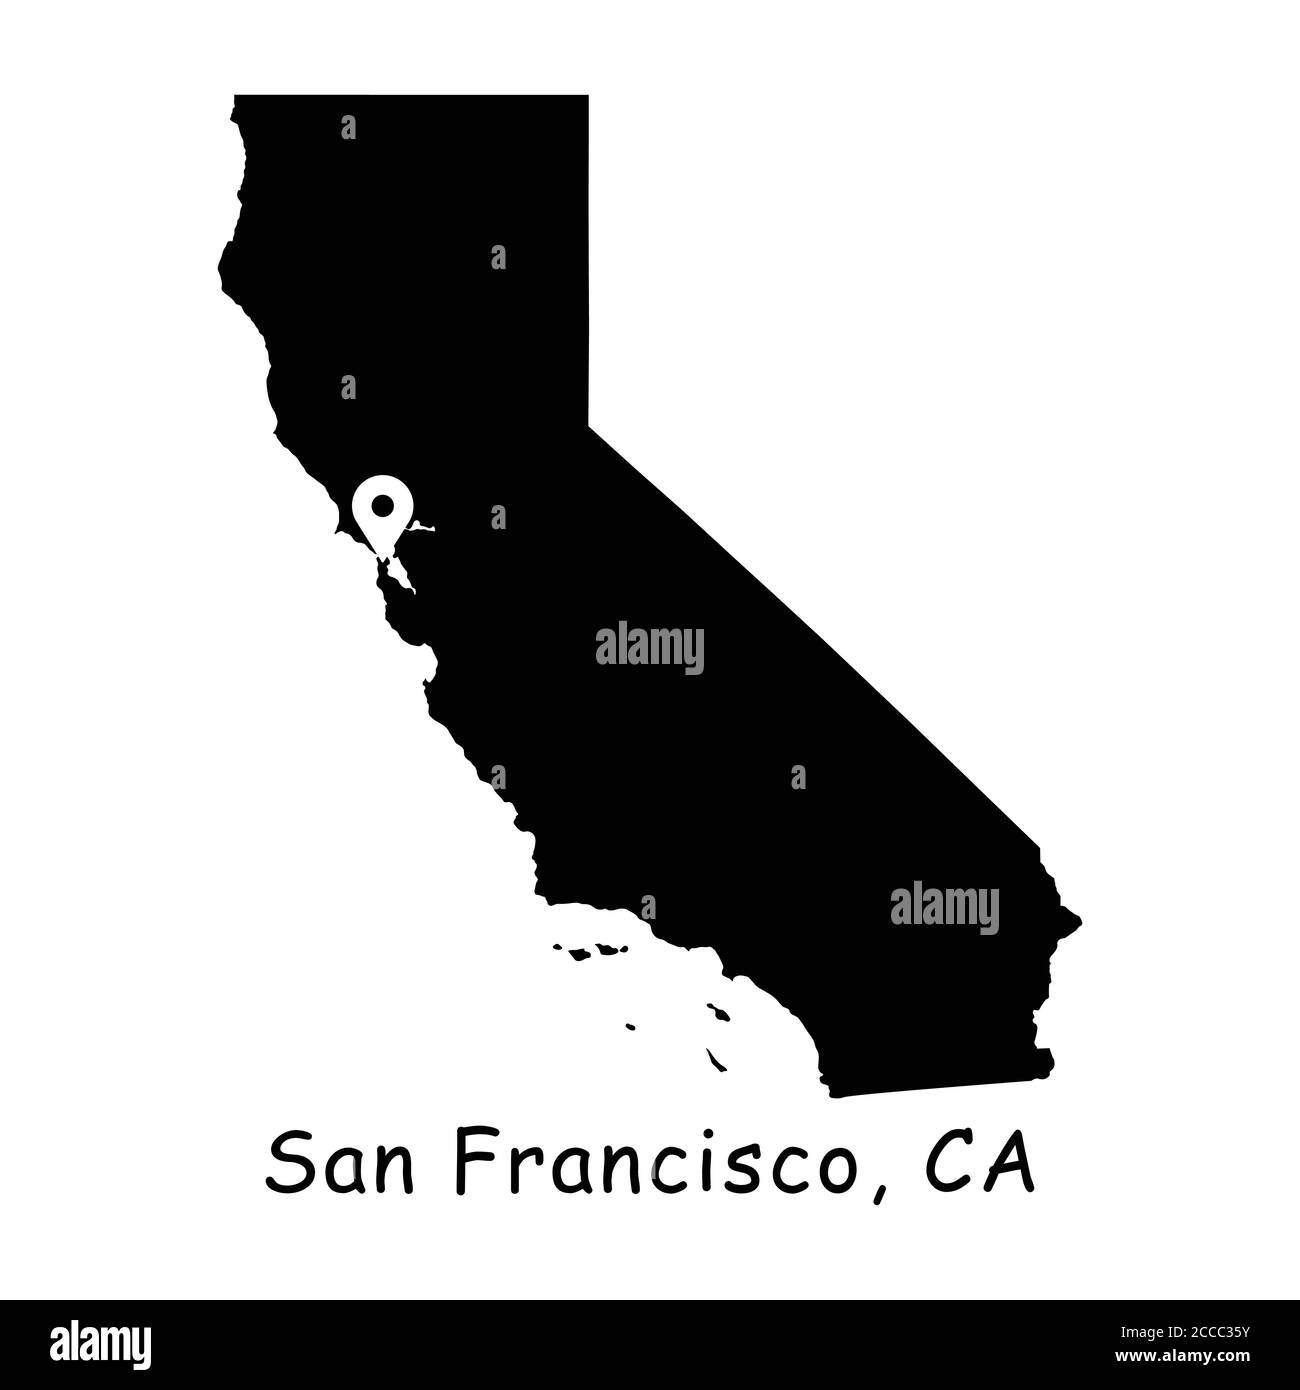 San Francisco auf der California State Map. Detaillierte CA State Map mit Location Pin auf San Francisco Bay Area City. Schwarze Silhouette Vektorkarte isoliert ein Stock Vektor